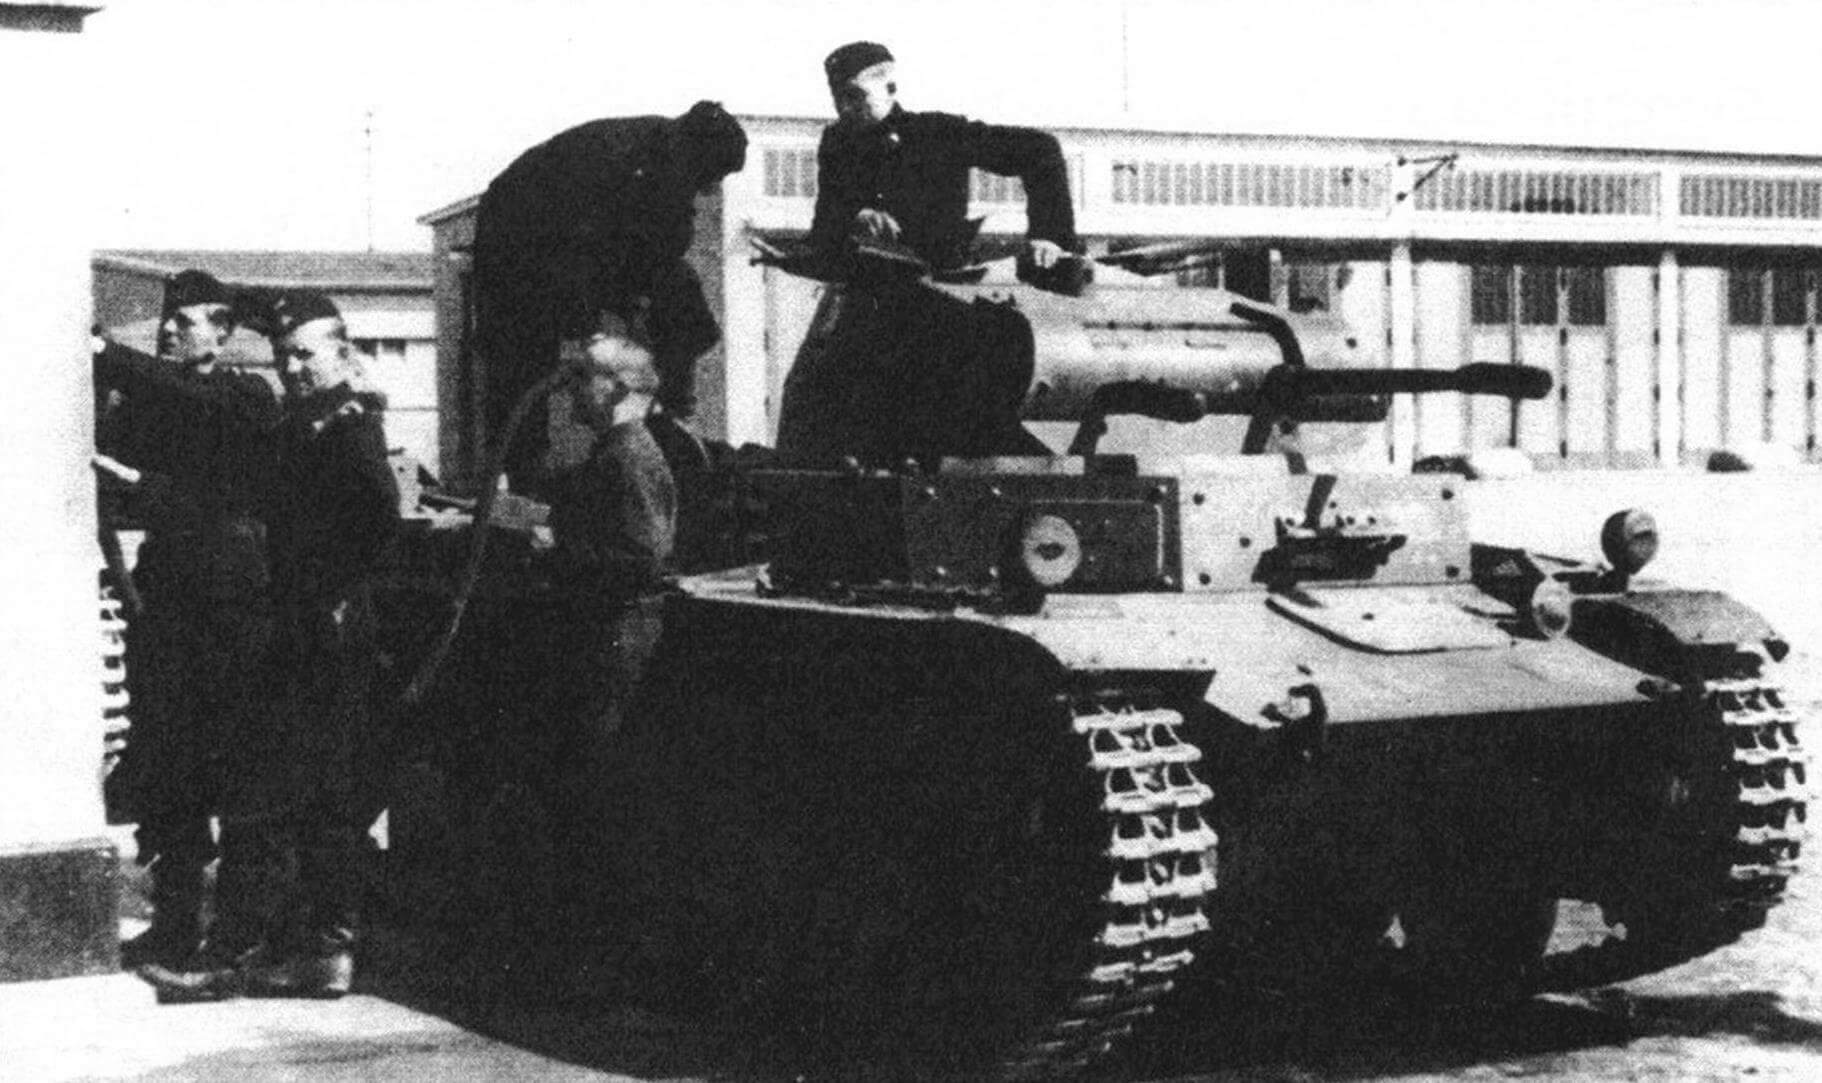 Заправка топливом танка Pz.II во 2-й танковой бригаде. После Польской кампании лобовая броня танков с, А и В была усилена накладными листами. Опознавательный знак -черный крест в белой окантовке - был введен с 26 октября 1939 года